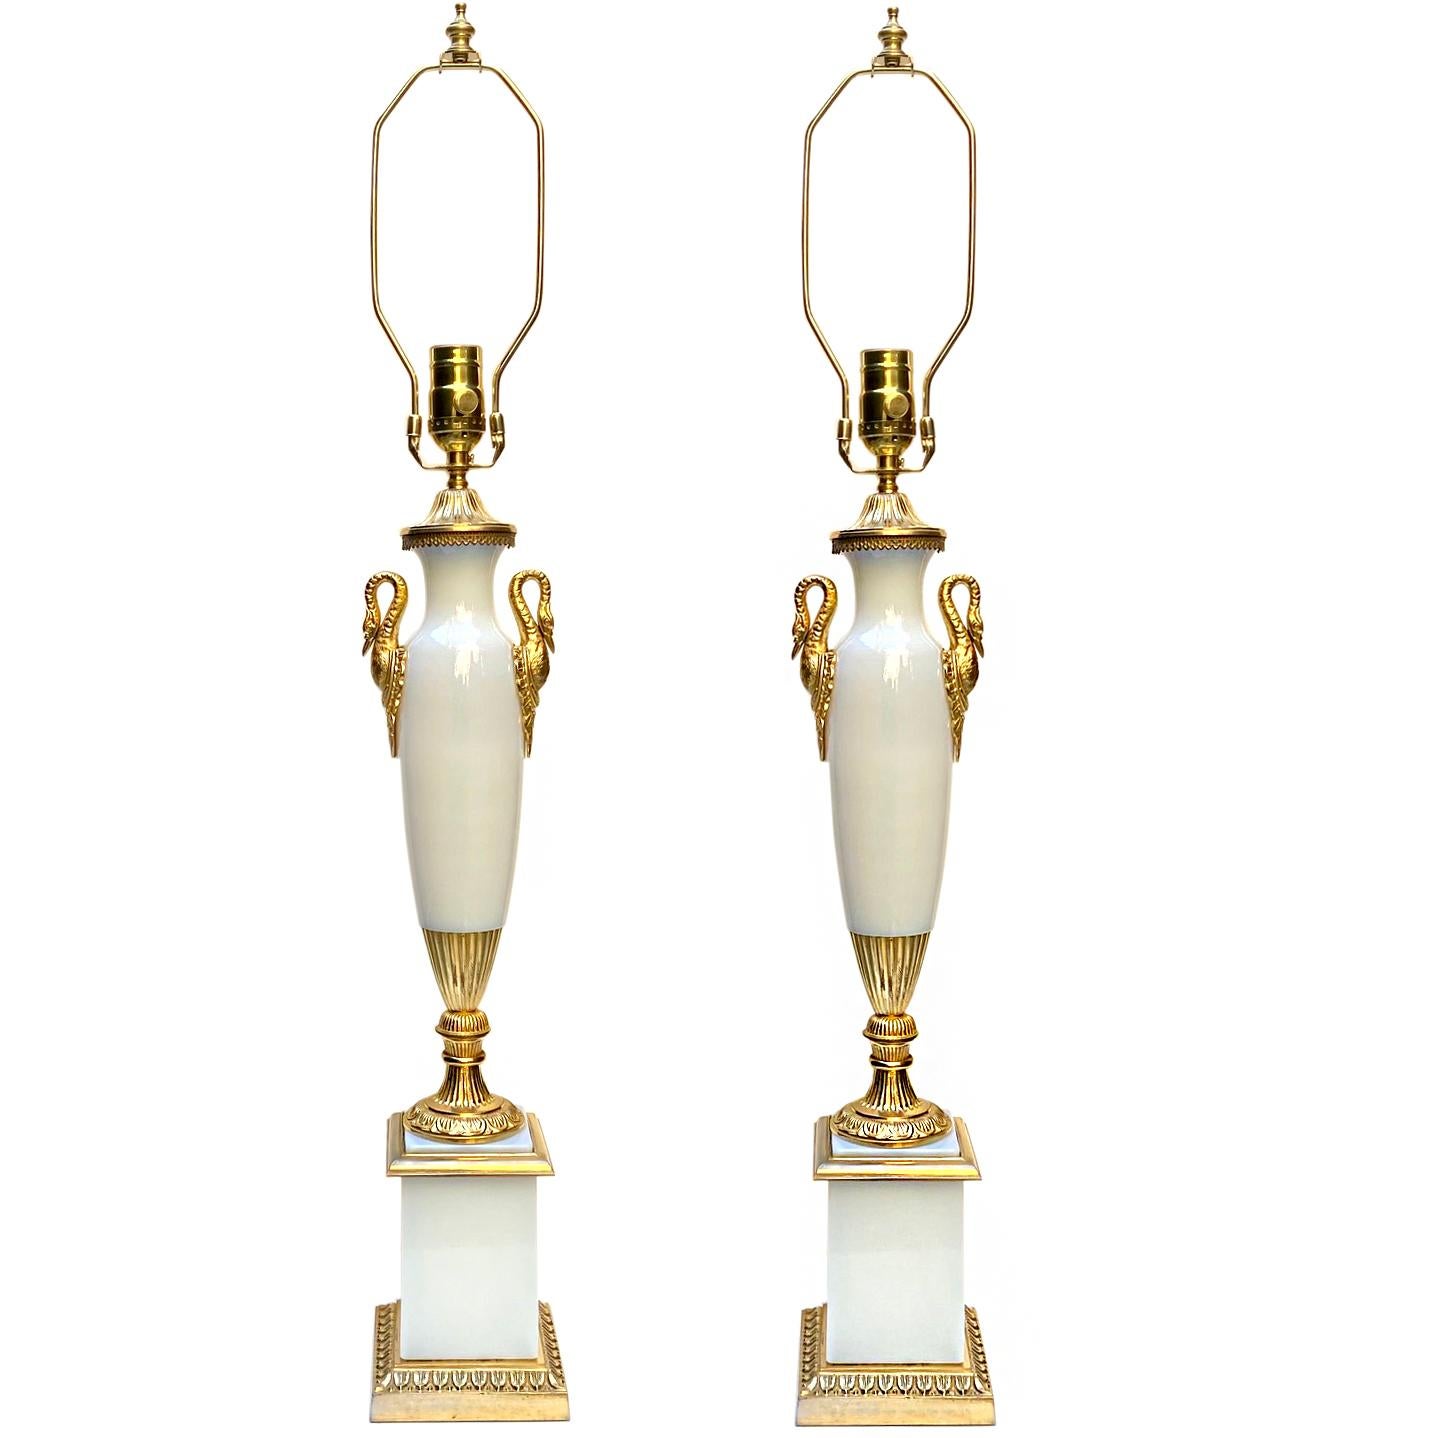 Une paire de lampes de table de style Empire, datant des années 1920, en bronze doré et verre opalin blanc.

Mesures :
Hauteur du corps : 21
Largeur au plus large : 4,75